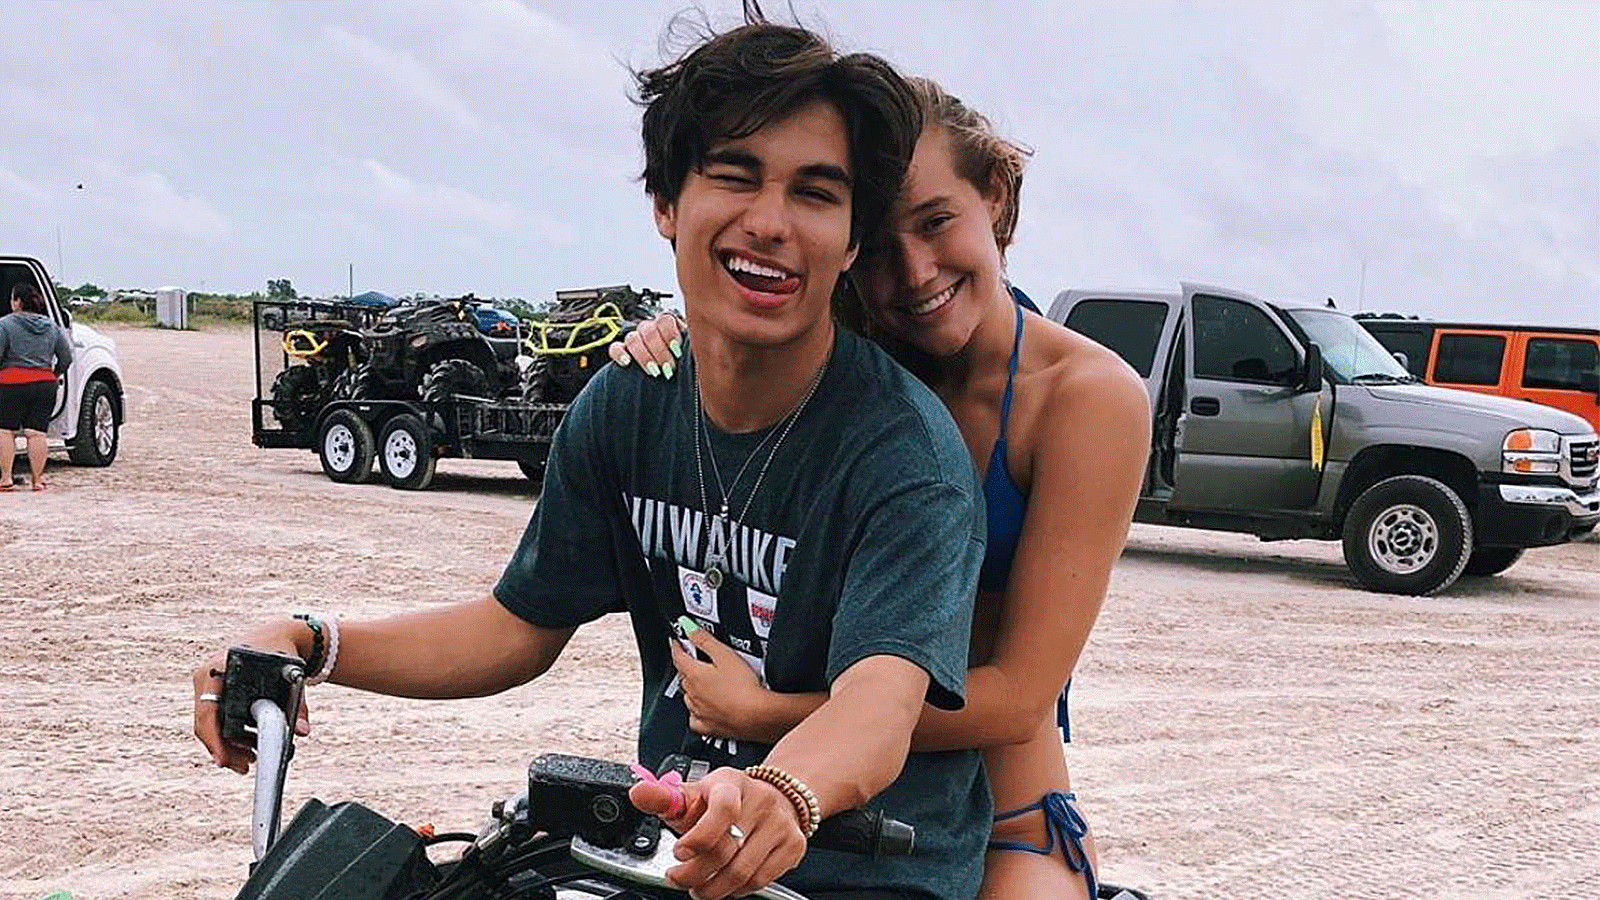 Kio Cyr and Olivia Ponton riding an ATV